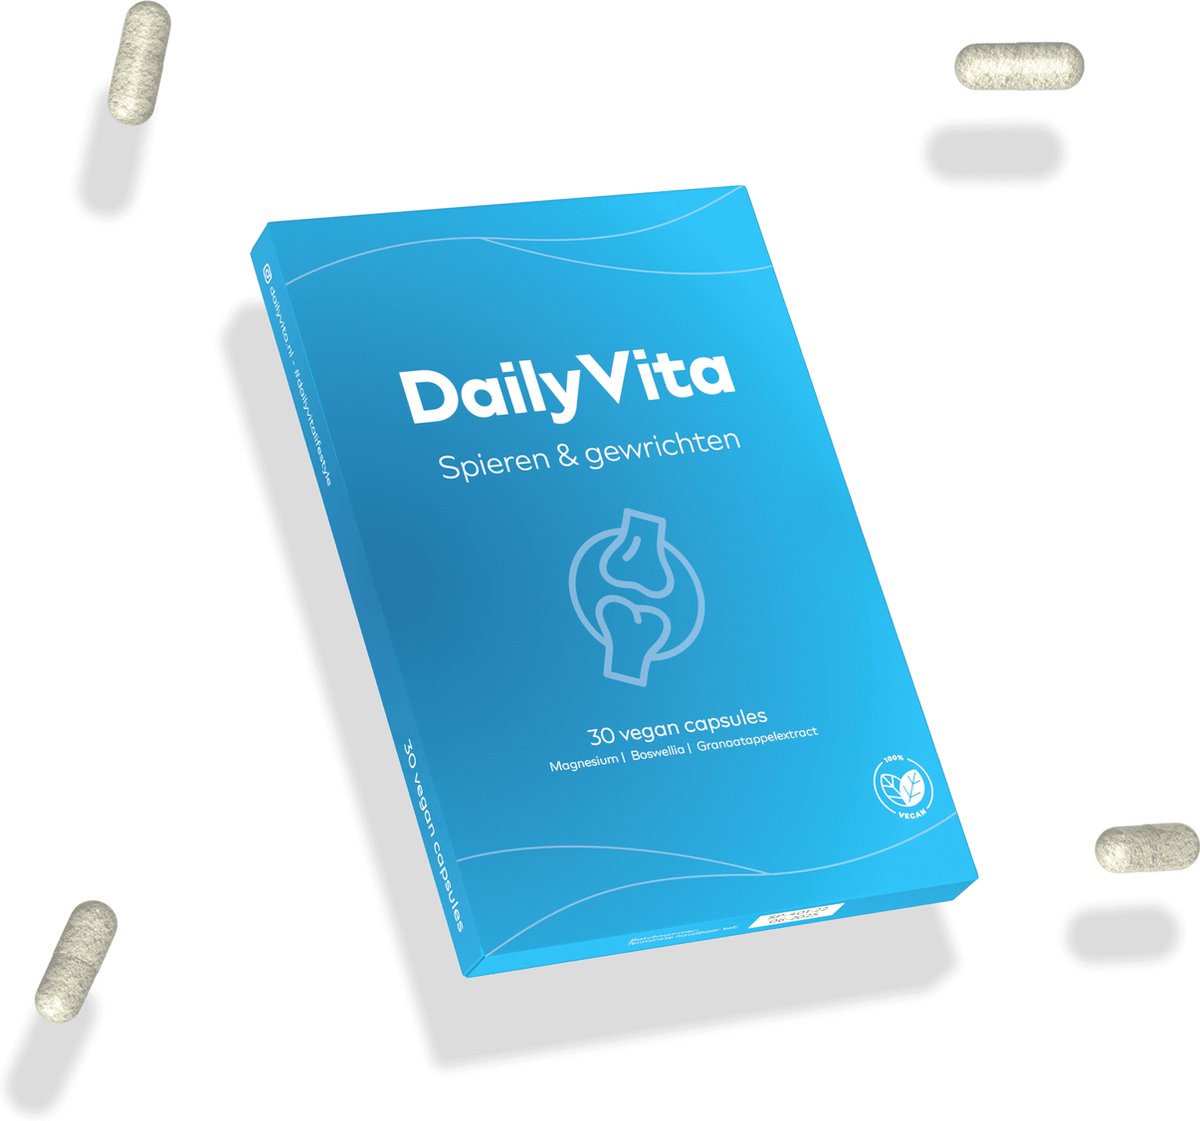 DailyVita - Spieren & gewrichten - 30 vegan capsules - met Magnesium, Boswellia, Vitamine D3 en Granaatappel extract